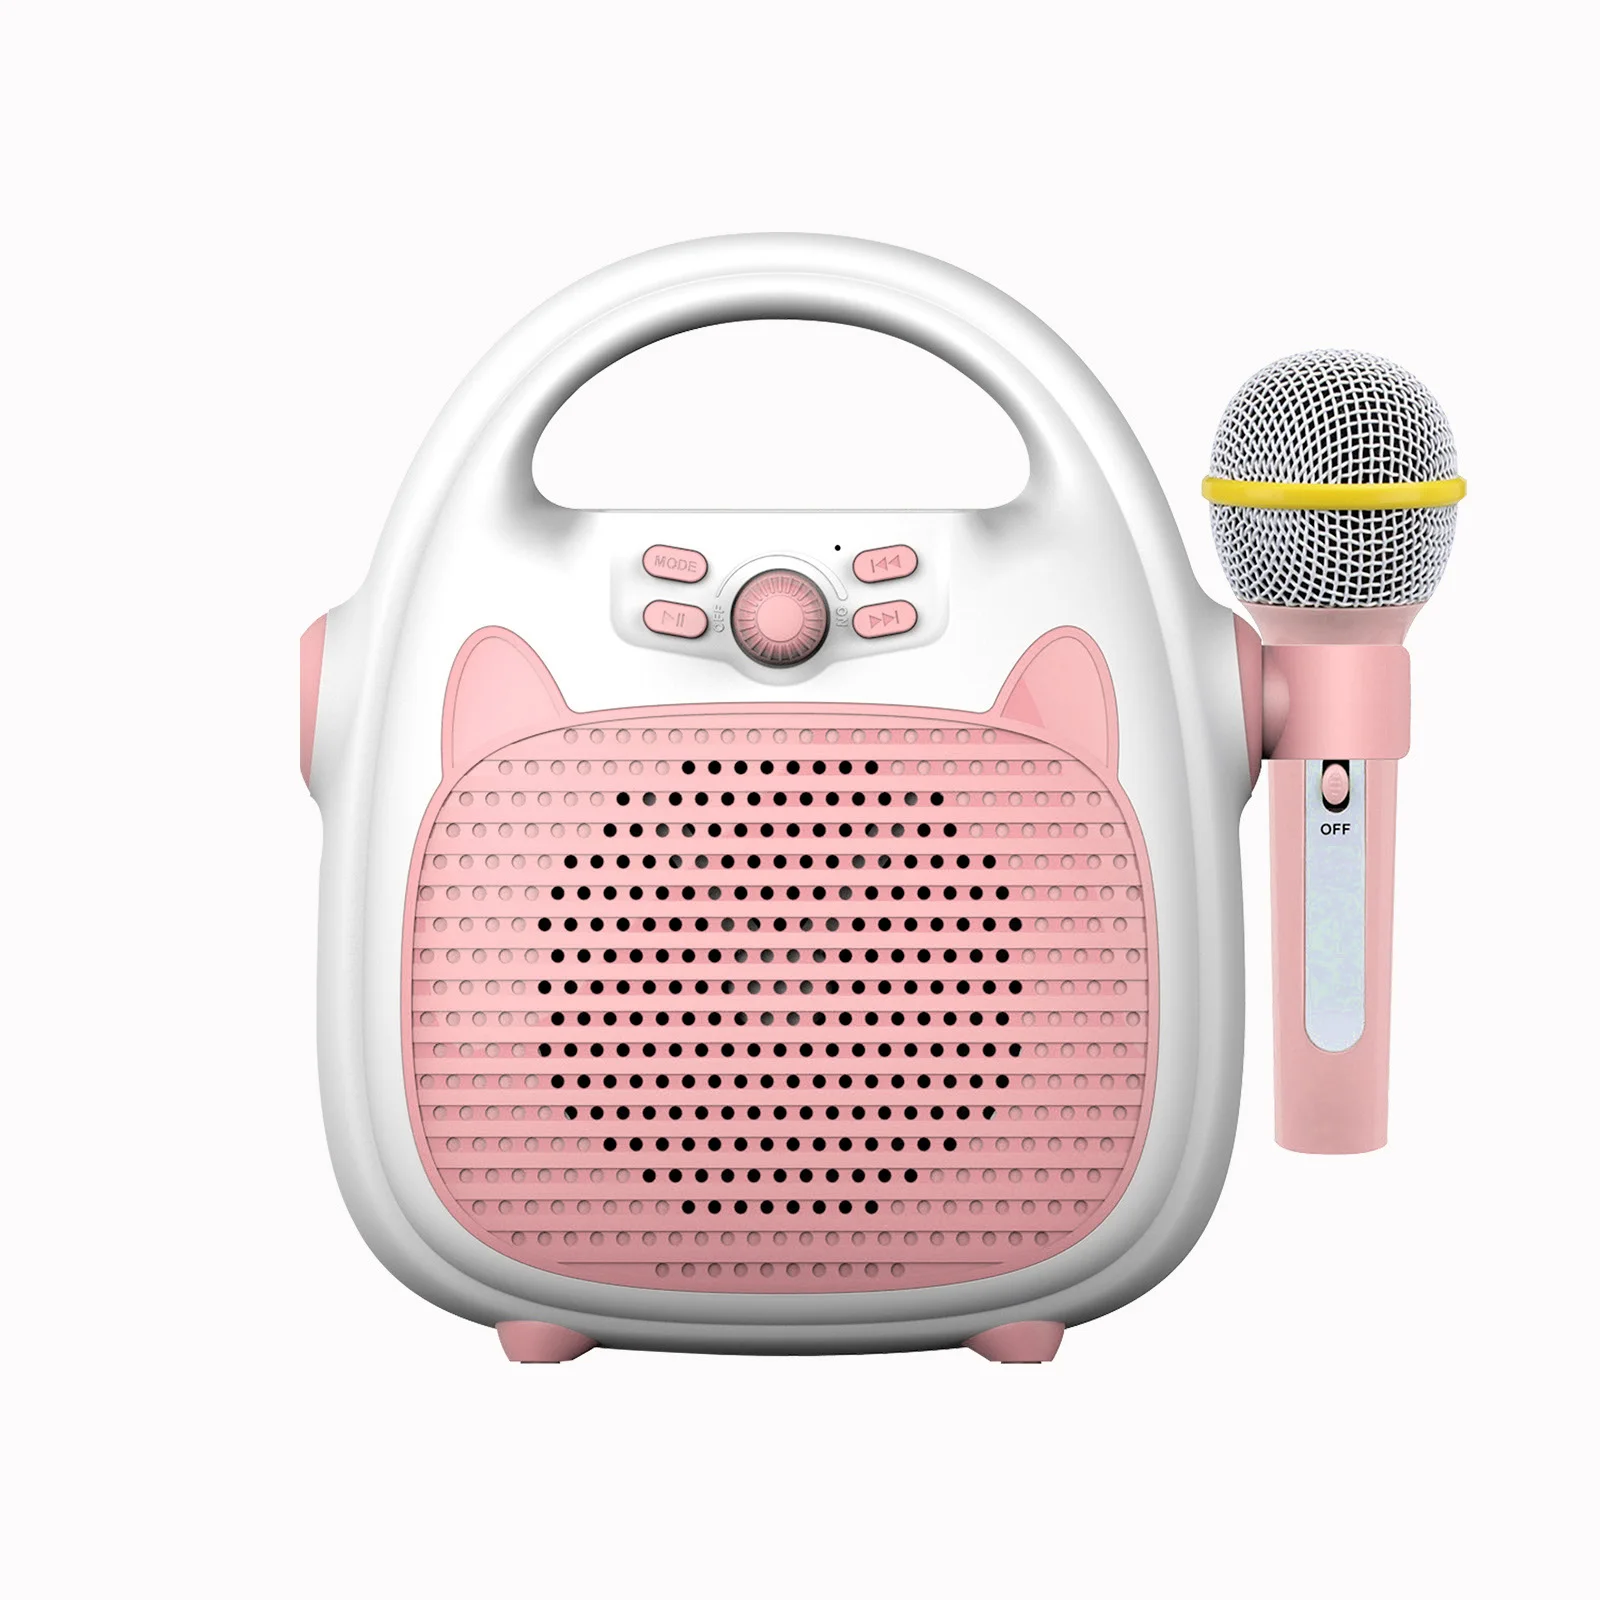 microphone pour enfants pour chanter machine de karaoké pour enfants avec microphone portable Rouge microphone Bluetooth sans fil avec haut-parleur Microphone pour enfants